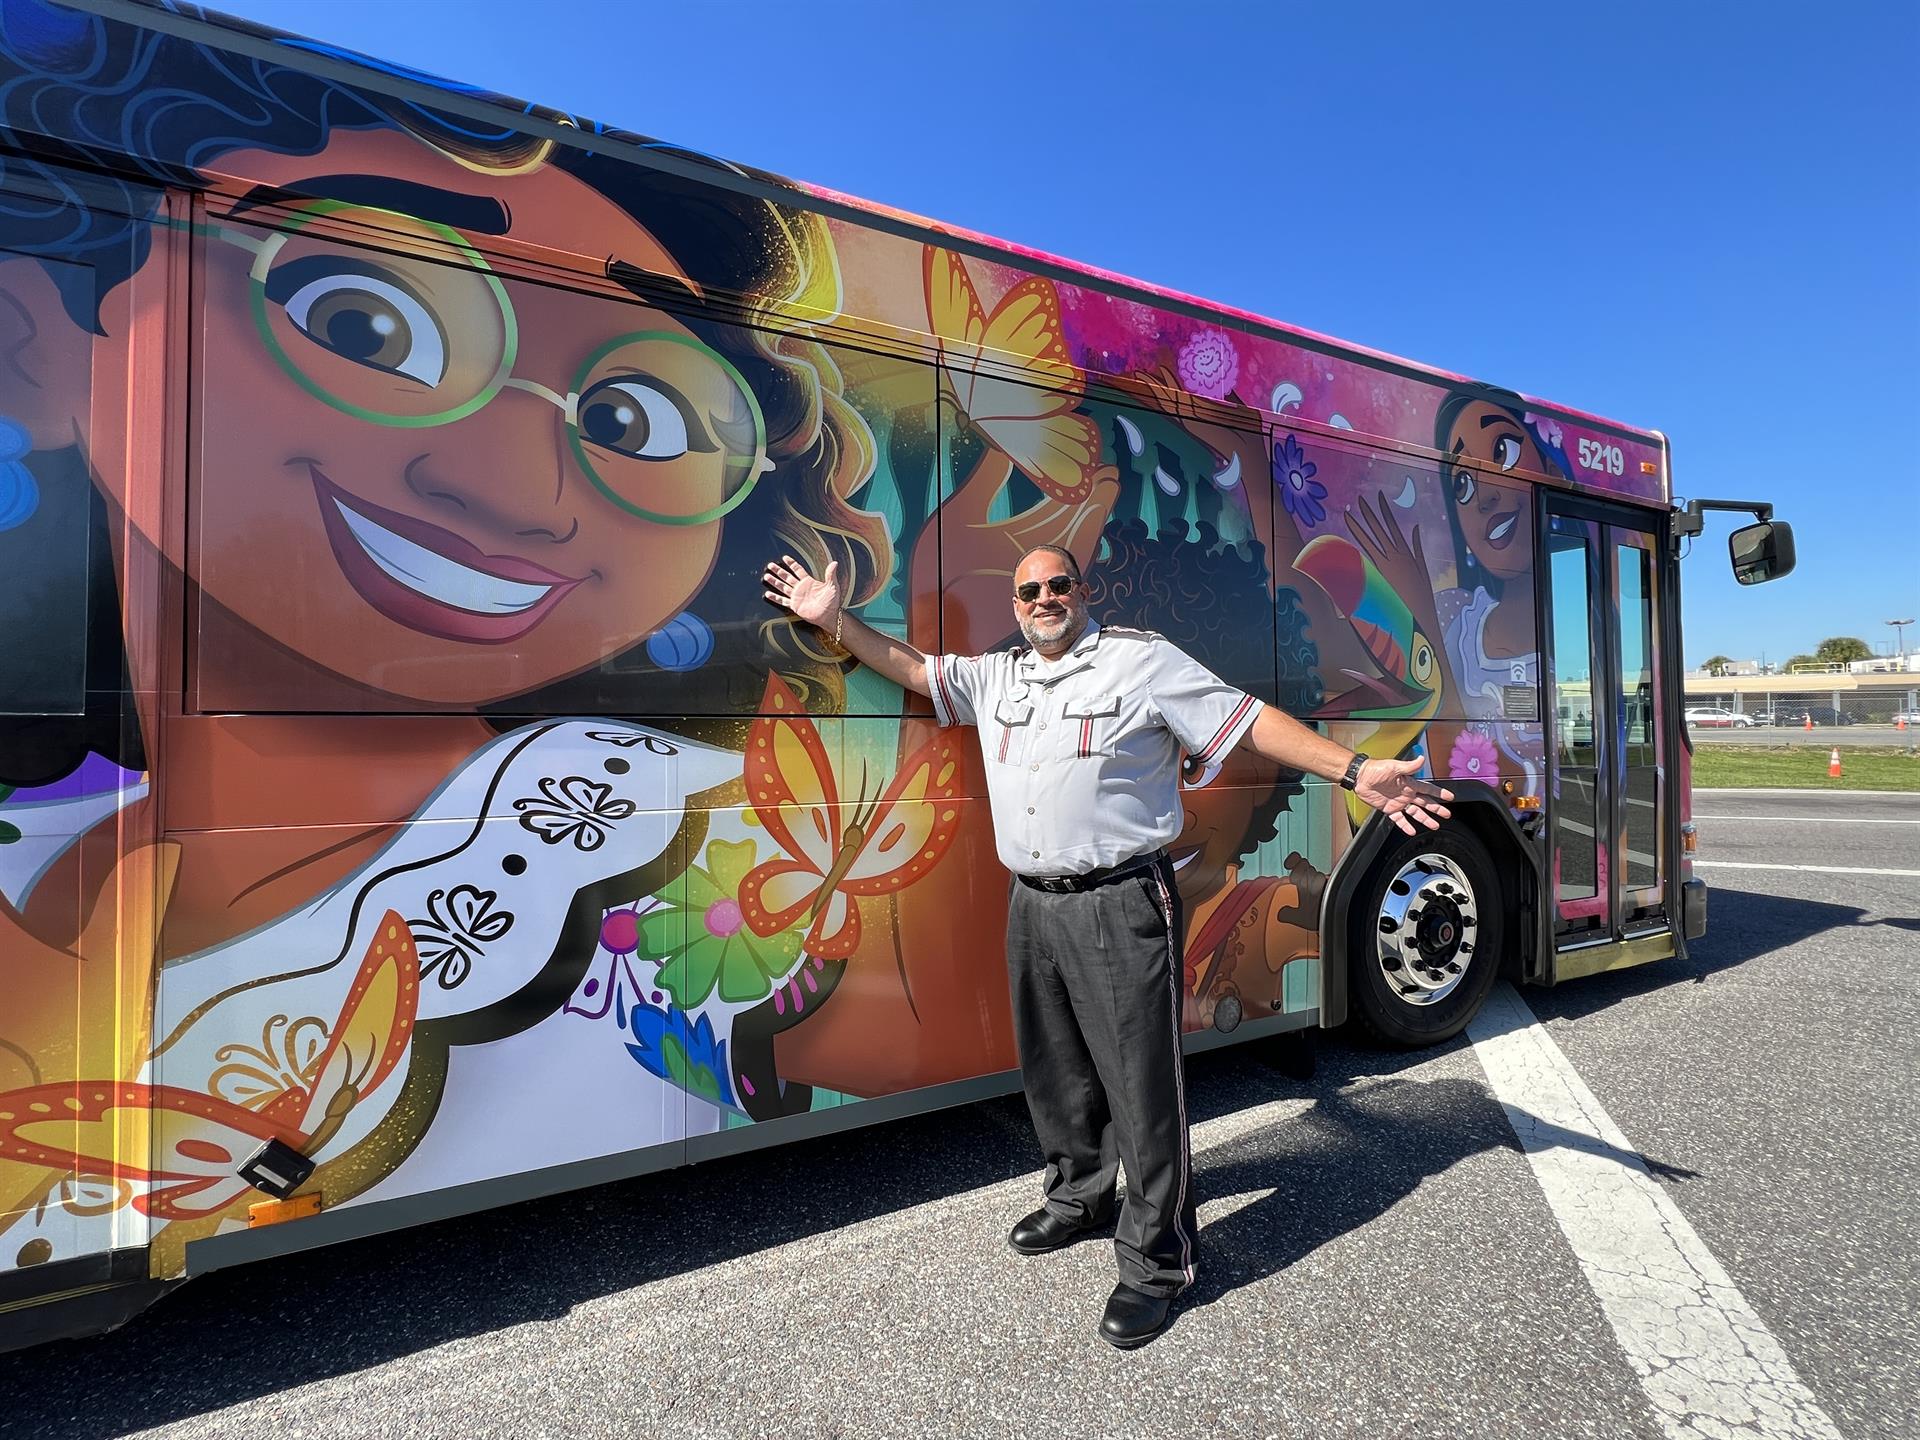 Fotografía cedida por Disney donde se muestra a un conductor mientras señala a un autobús decorado con personajes de la película 